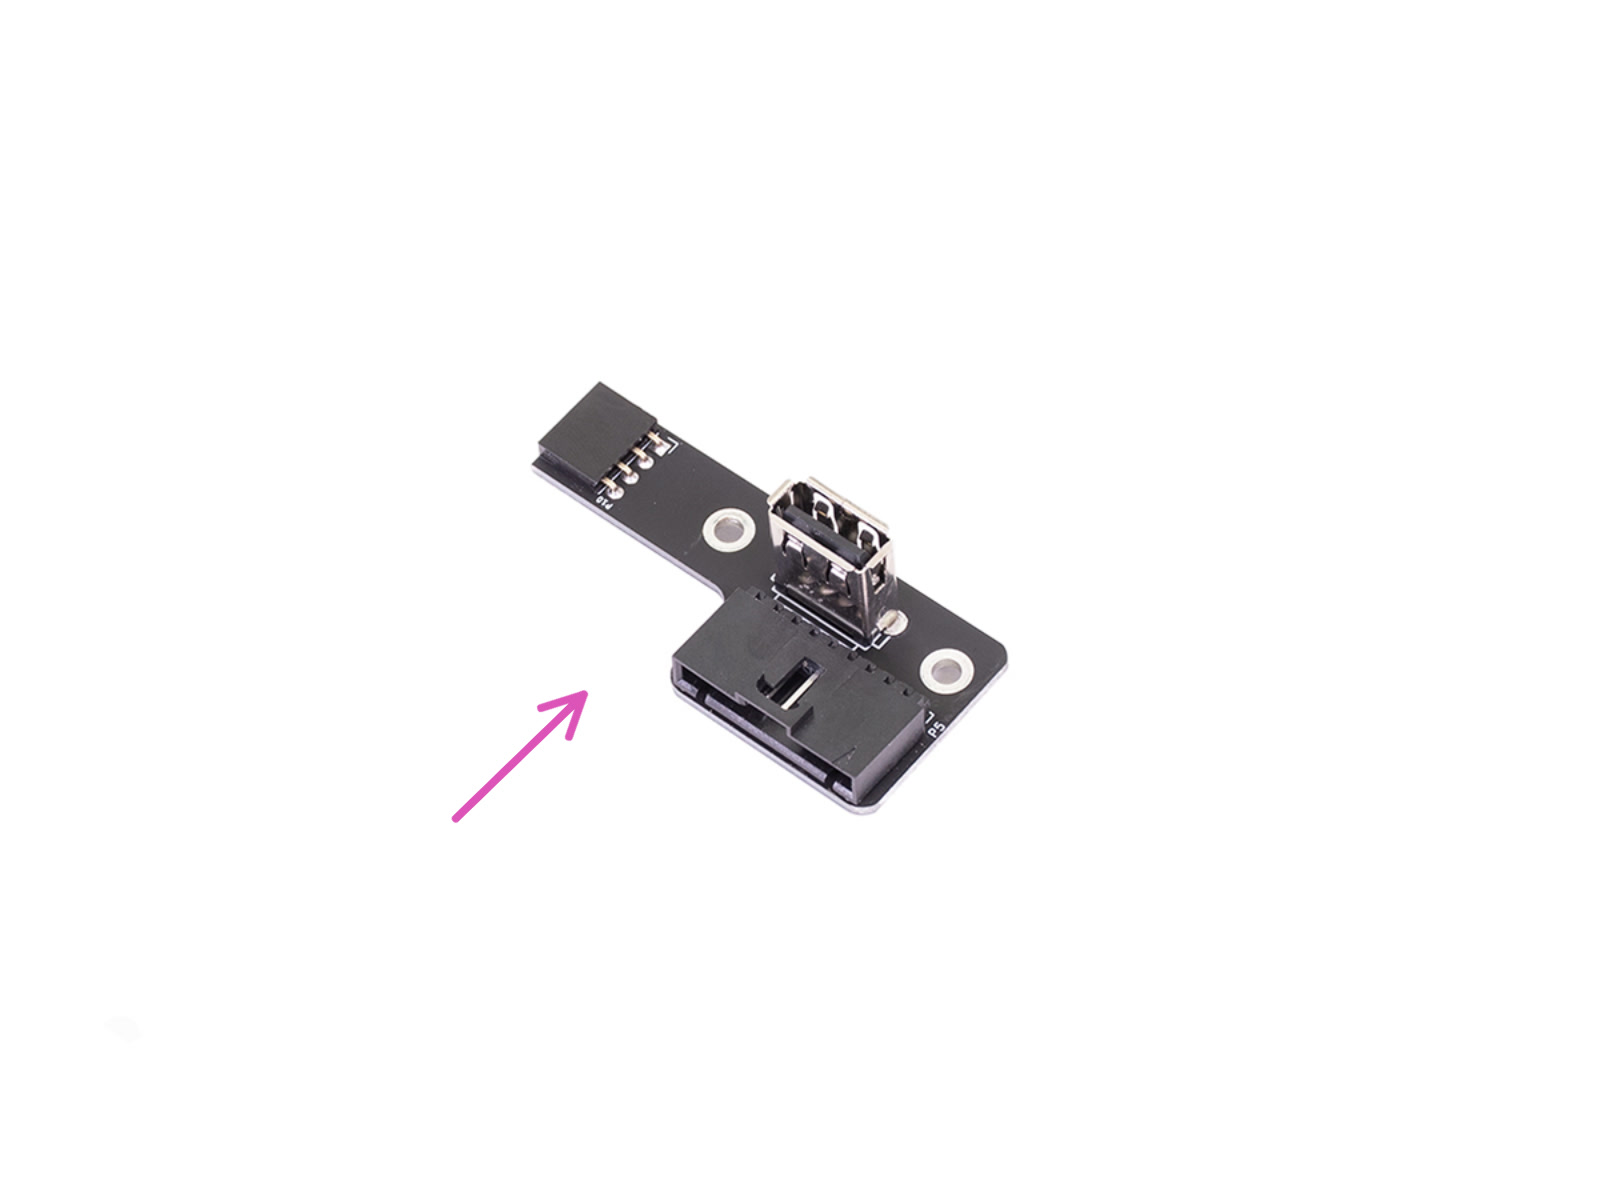 Nouveau connecteur USB - préparation des pièces (Version 3.0)